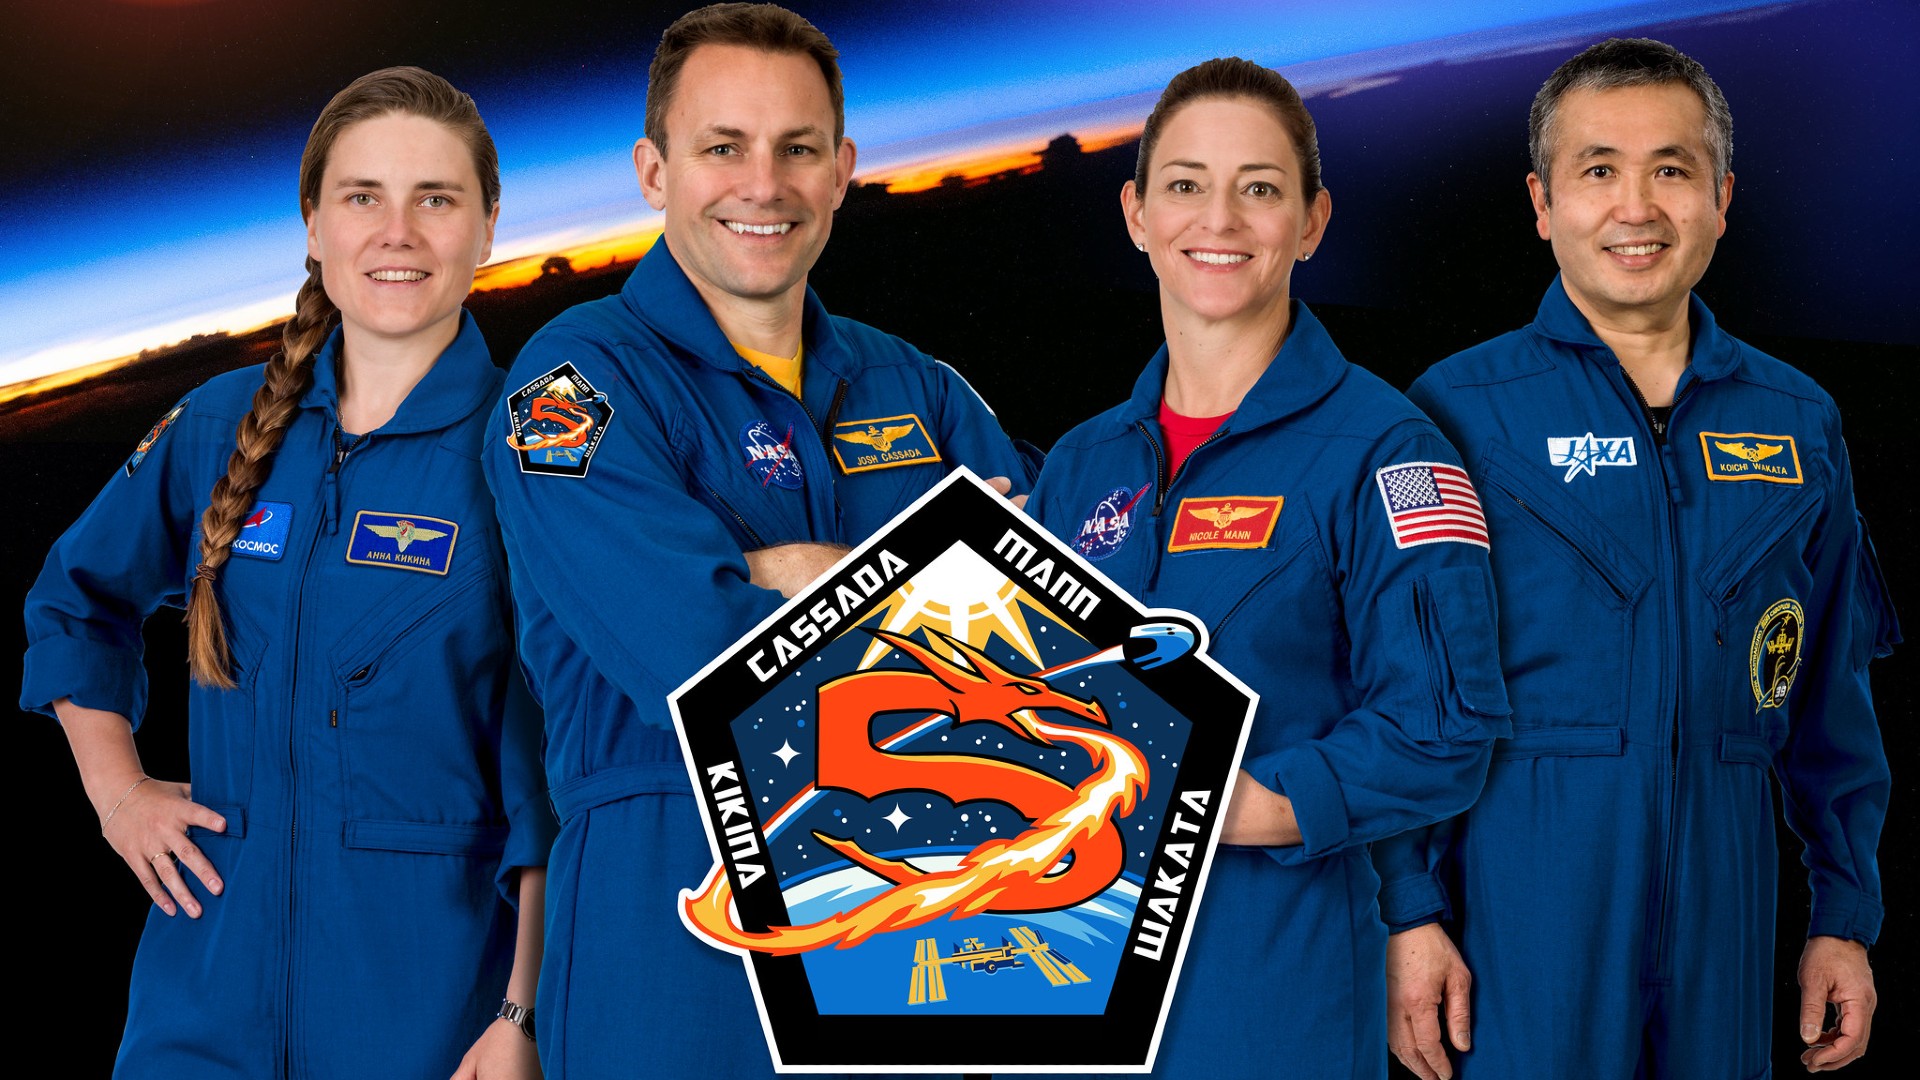 El retrato oficial de la tripulación de la misión Crew-5 de SpaceX.  Desde la izquierda están Anna Kikina, especialista en misiones;  Josh Cassada, piloto;  Nicole Mann, comandante de la nave espacial;  y Koichi Wakata, especialista en misiones.